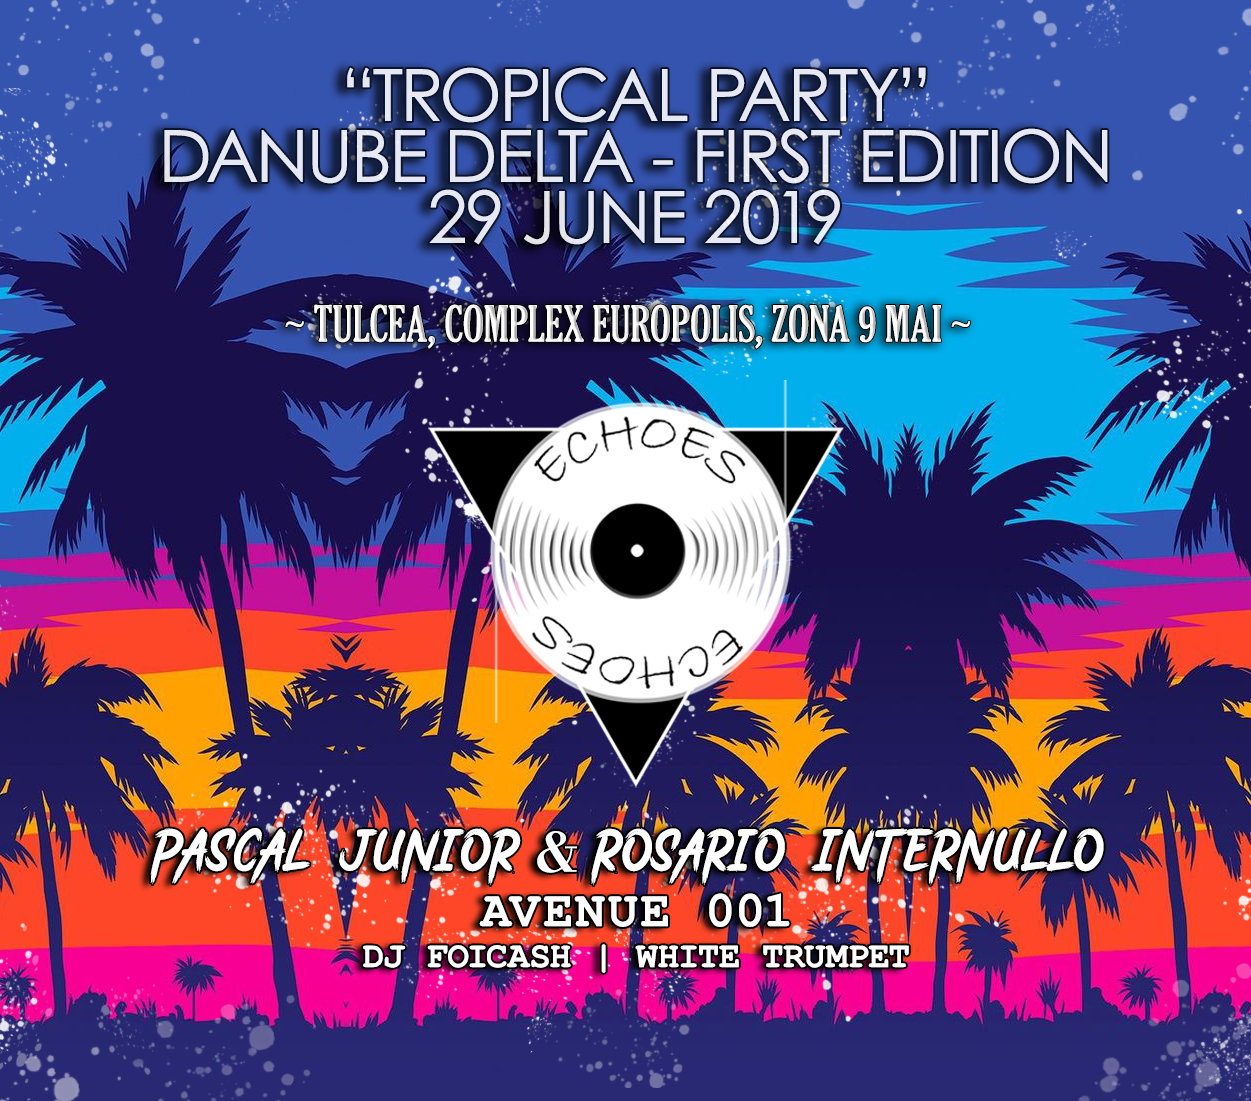 Petrecere tropicală pe muzică electronică în Tulcea, cu DJ Internullo